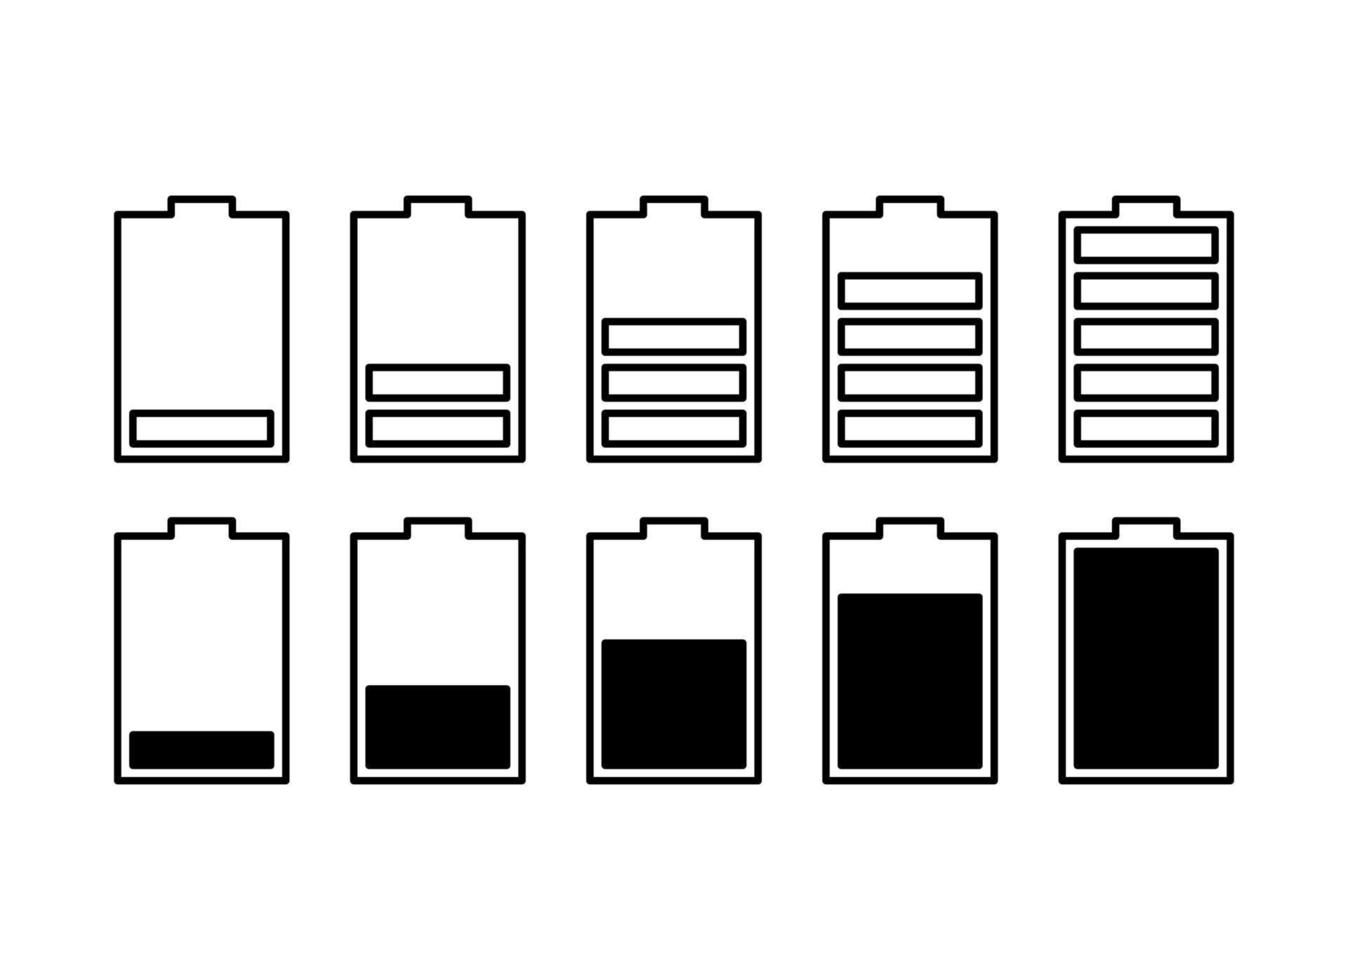 icône de vecteur de batterie sertie d'indicateurs de niveau de charge. icônes plates simples isolées